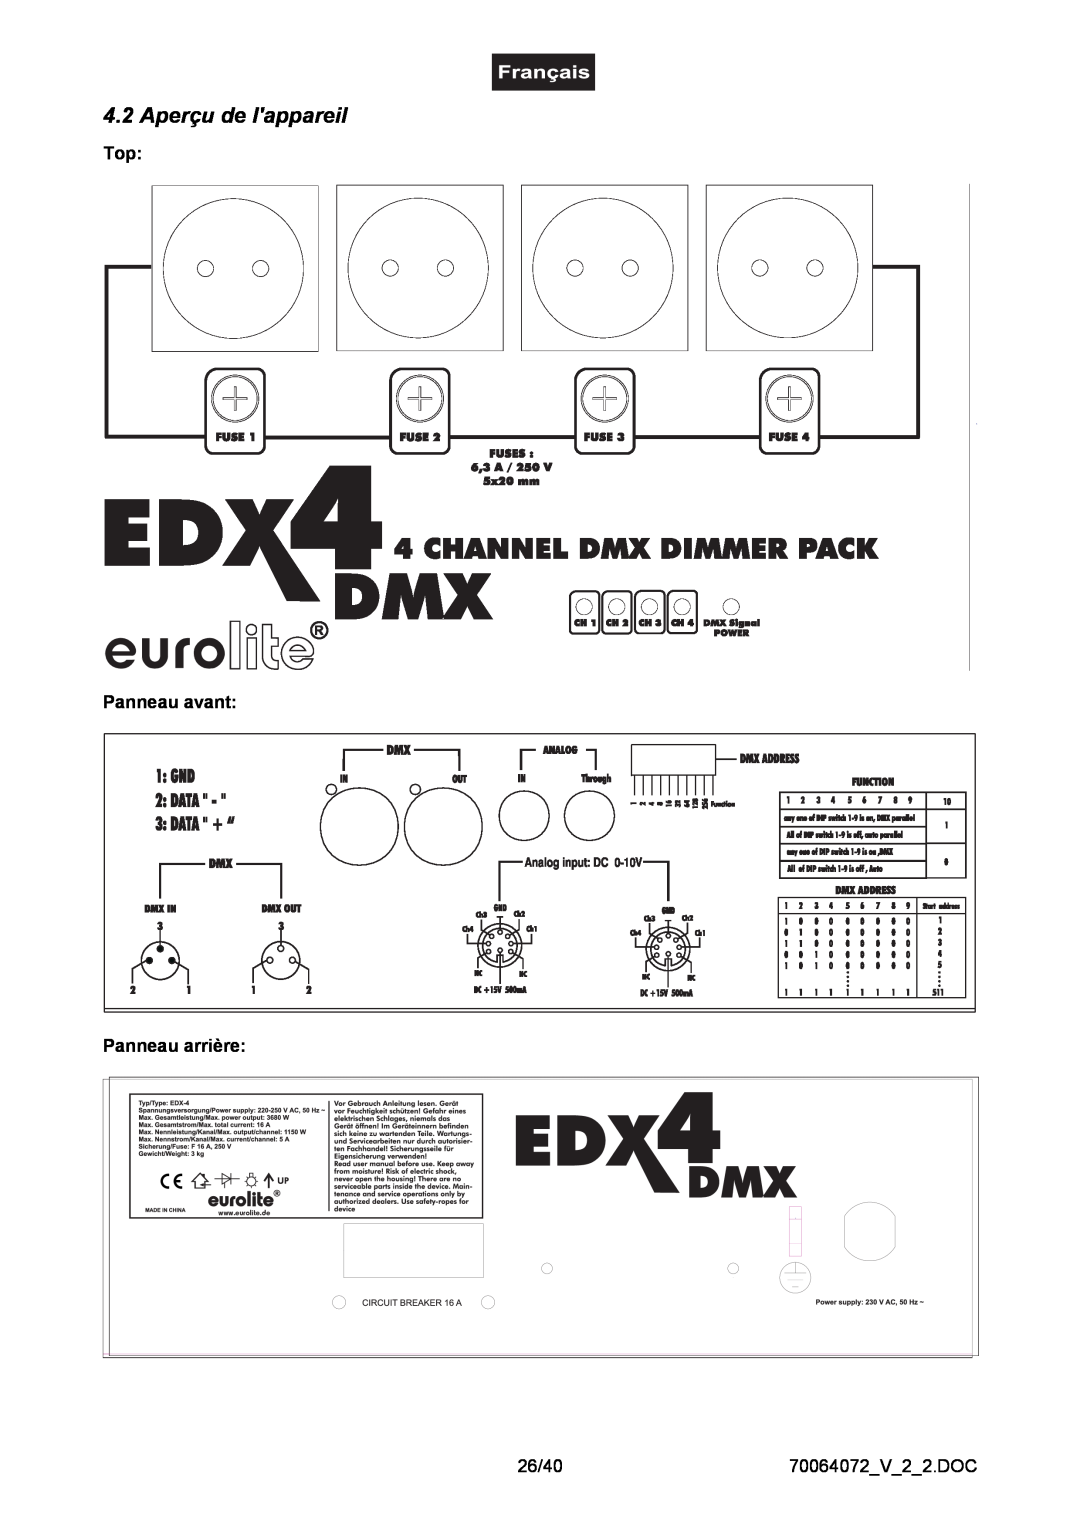 EuroLite Cases EDX-4, 4-channel DMX dimmer pack user manual Aperçu de lappareil, eurolite, Top Panneau avant Panneau arrière 